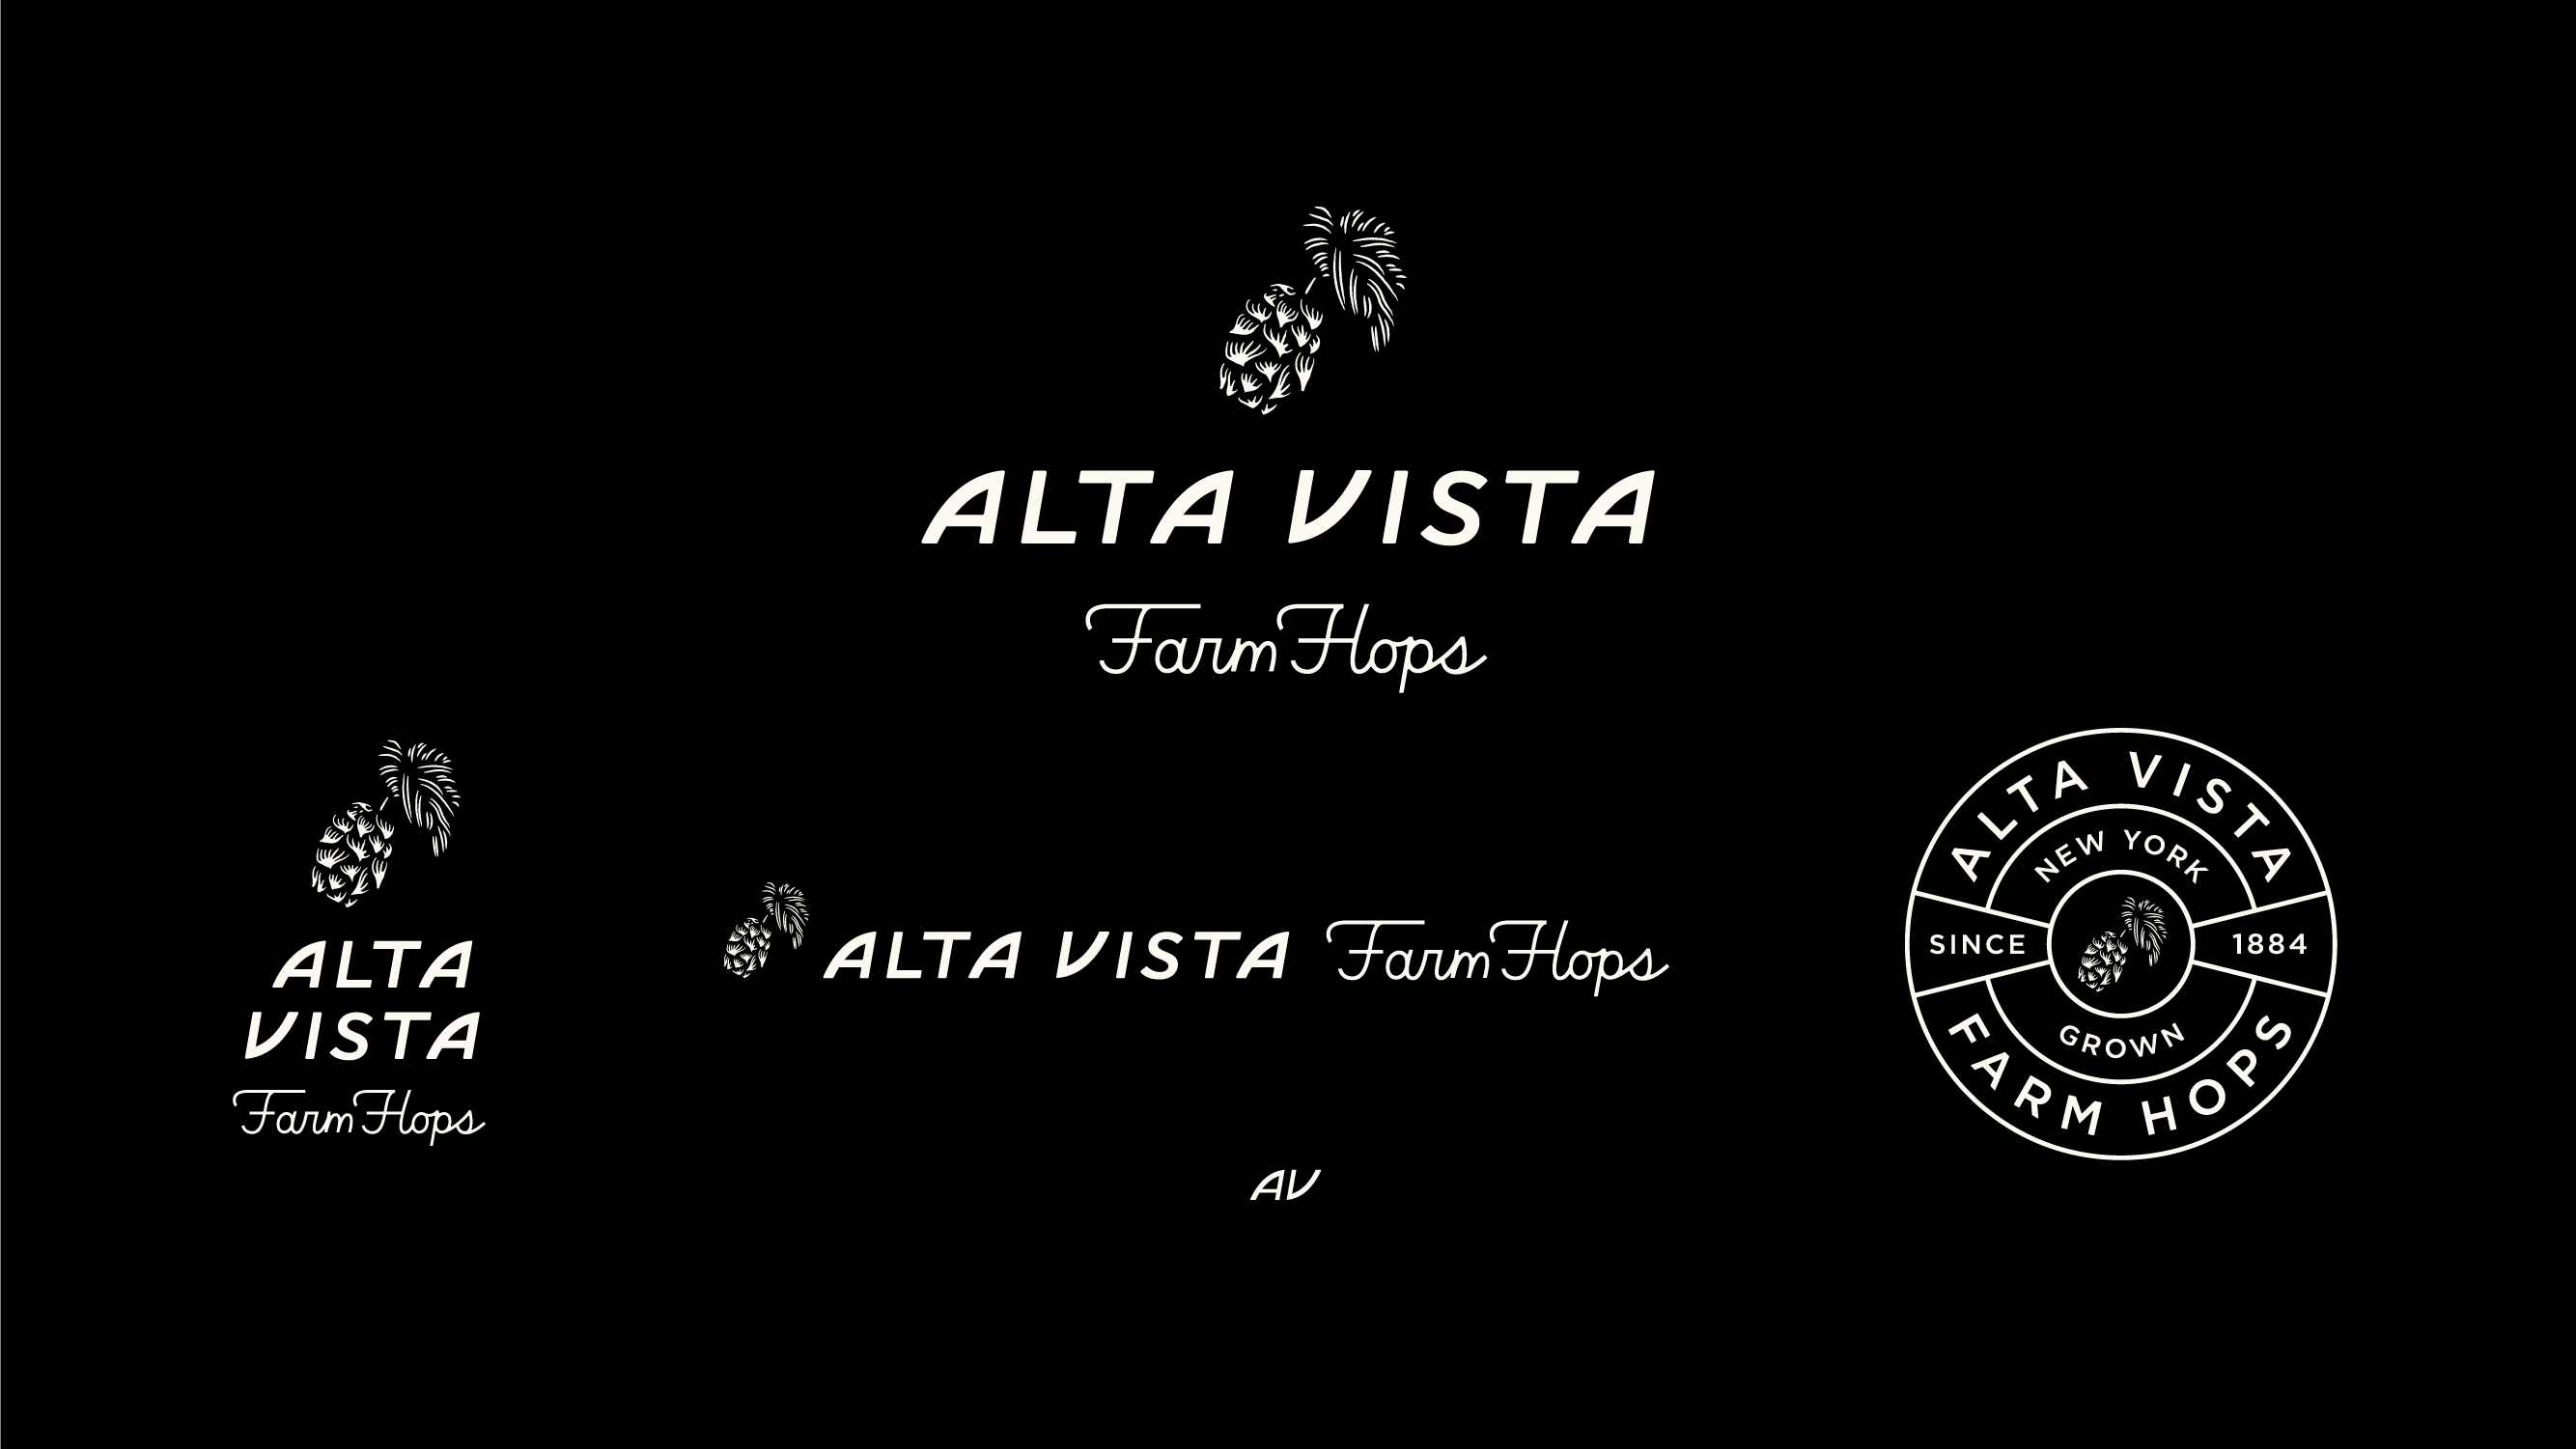 Alta Vista Farm Hops logo system